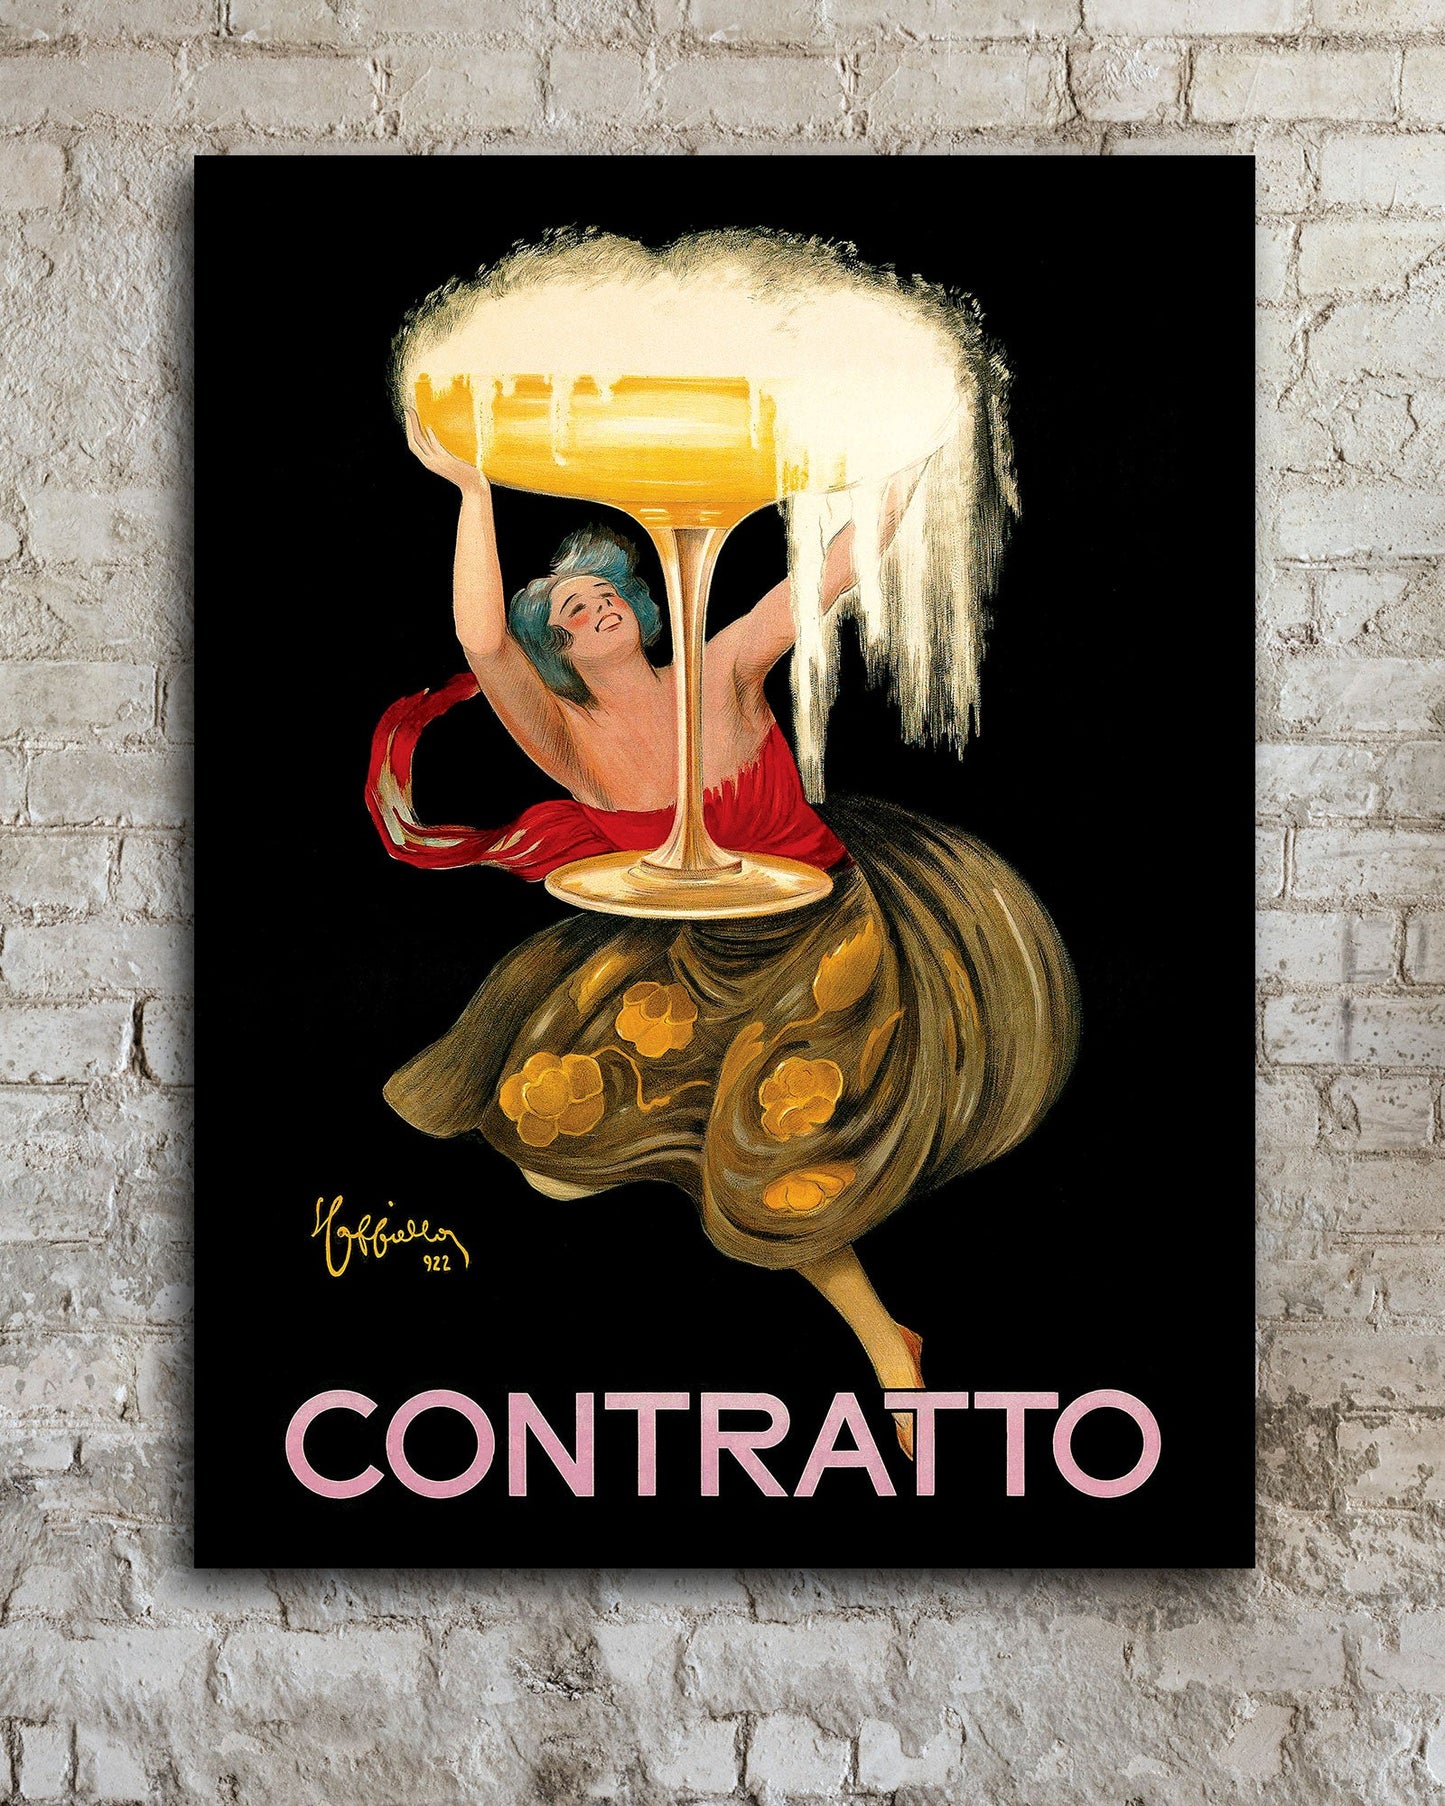 Vintage Contratto poster by Leonetto Cappiello - Transit Design